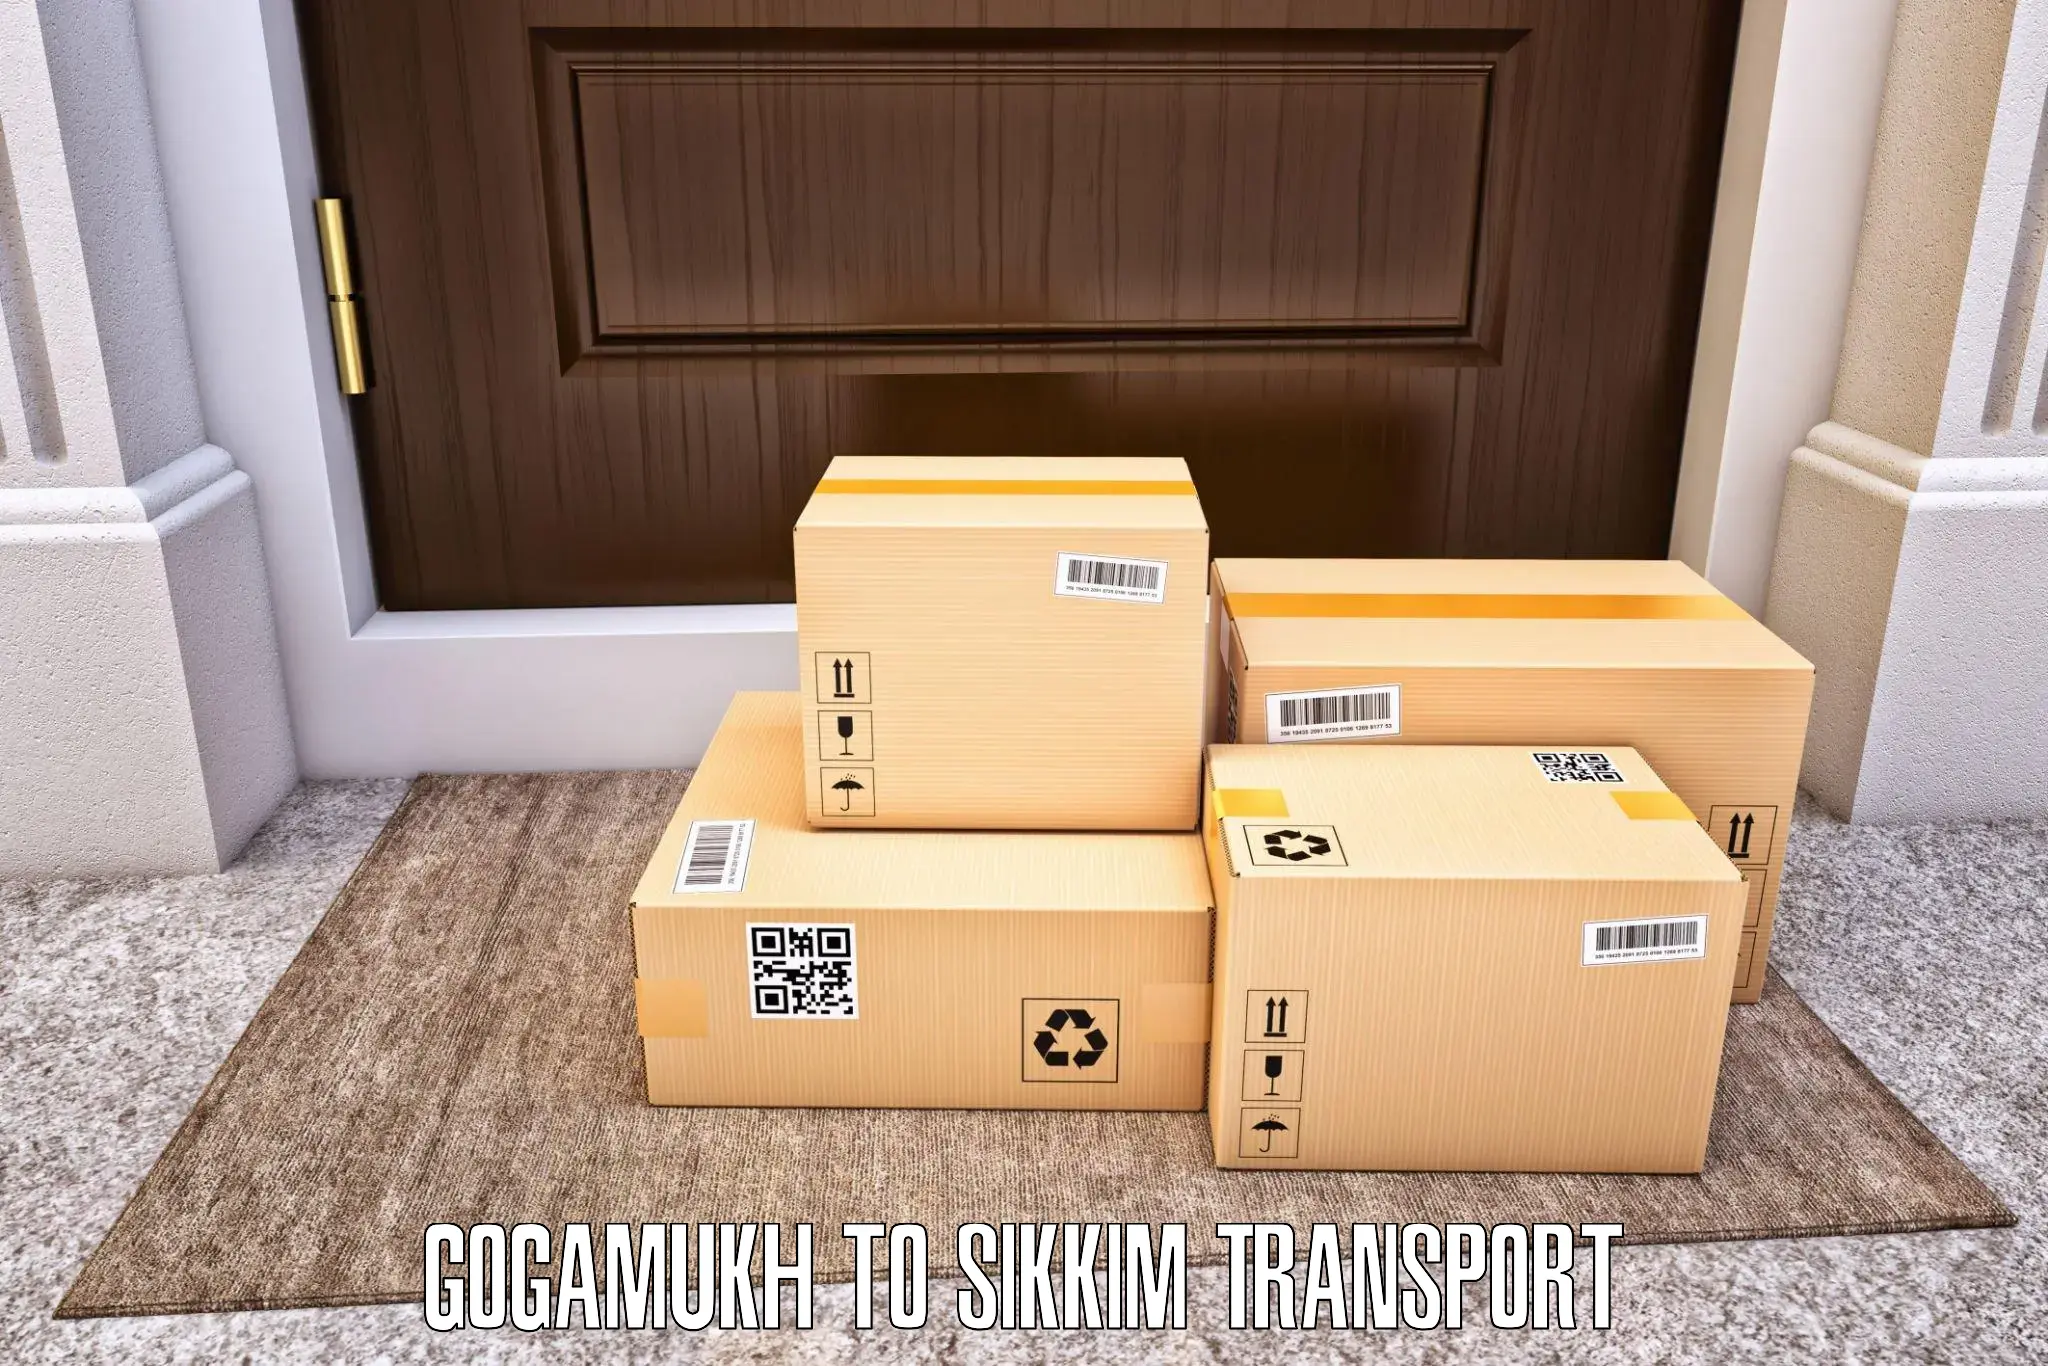 Logistics transportation services Gogamukh to Geyzing